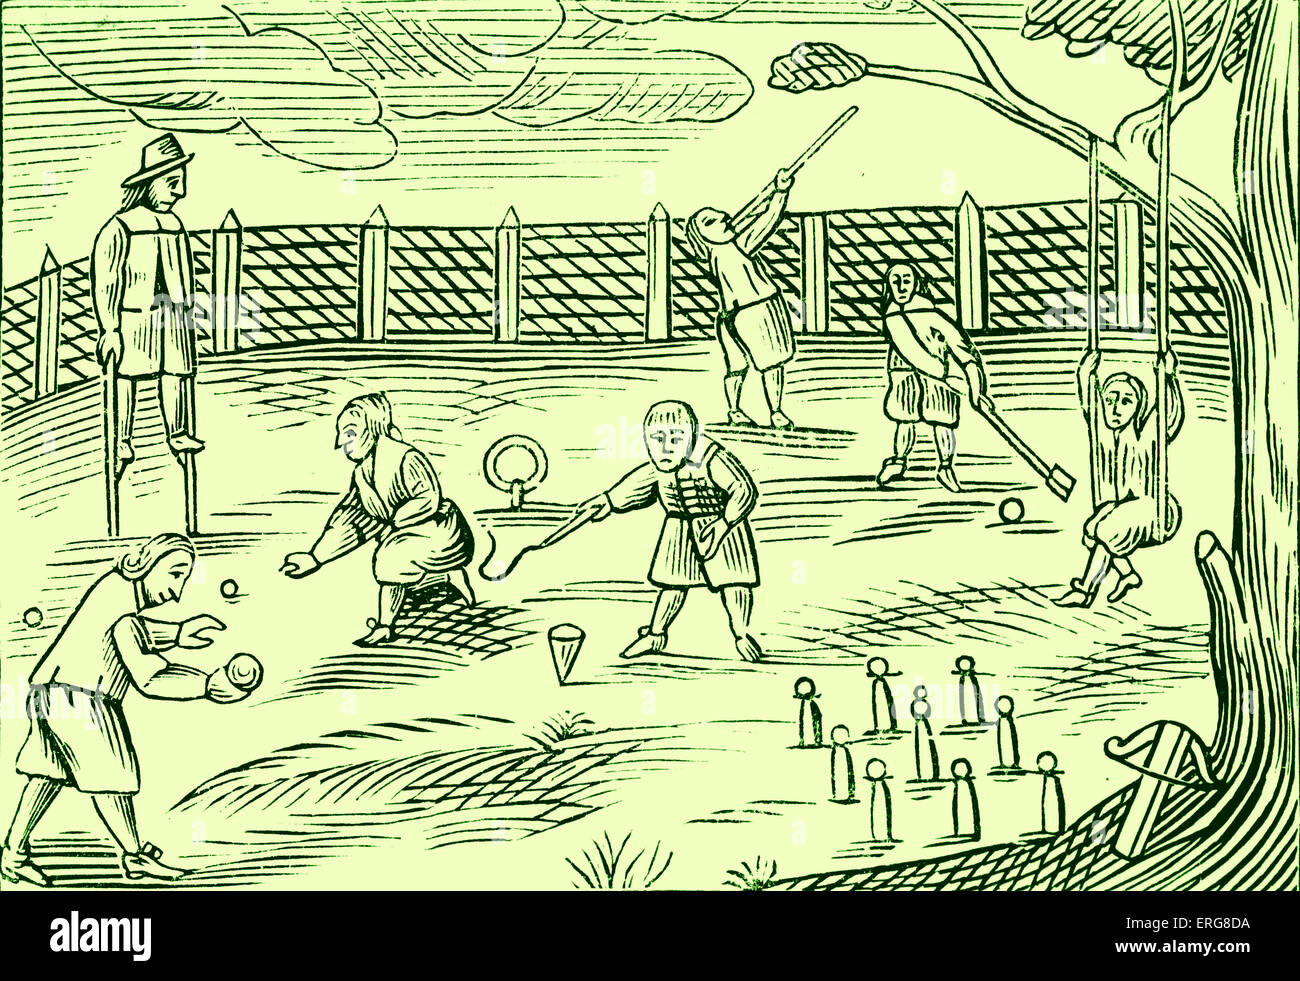 Boys Sport, entnommen aus einem 1659 englische Ausgabe von Johann Amos Comenius "Orbis Sensualium Pictus", wahrscheinlich die am weitesten verbreitete Stockfoto